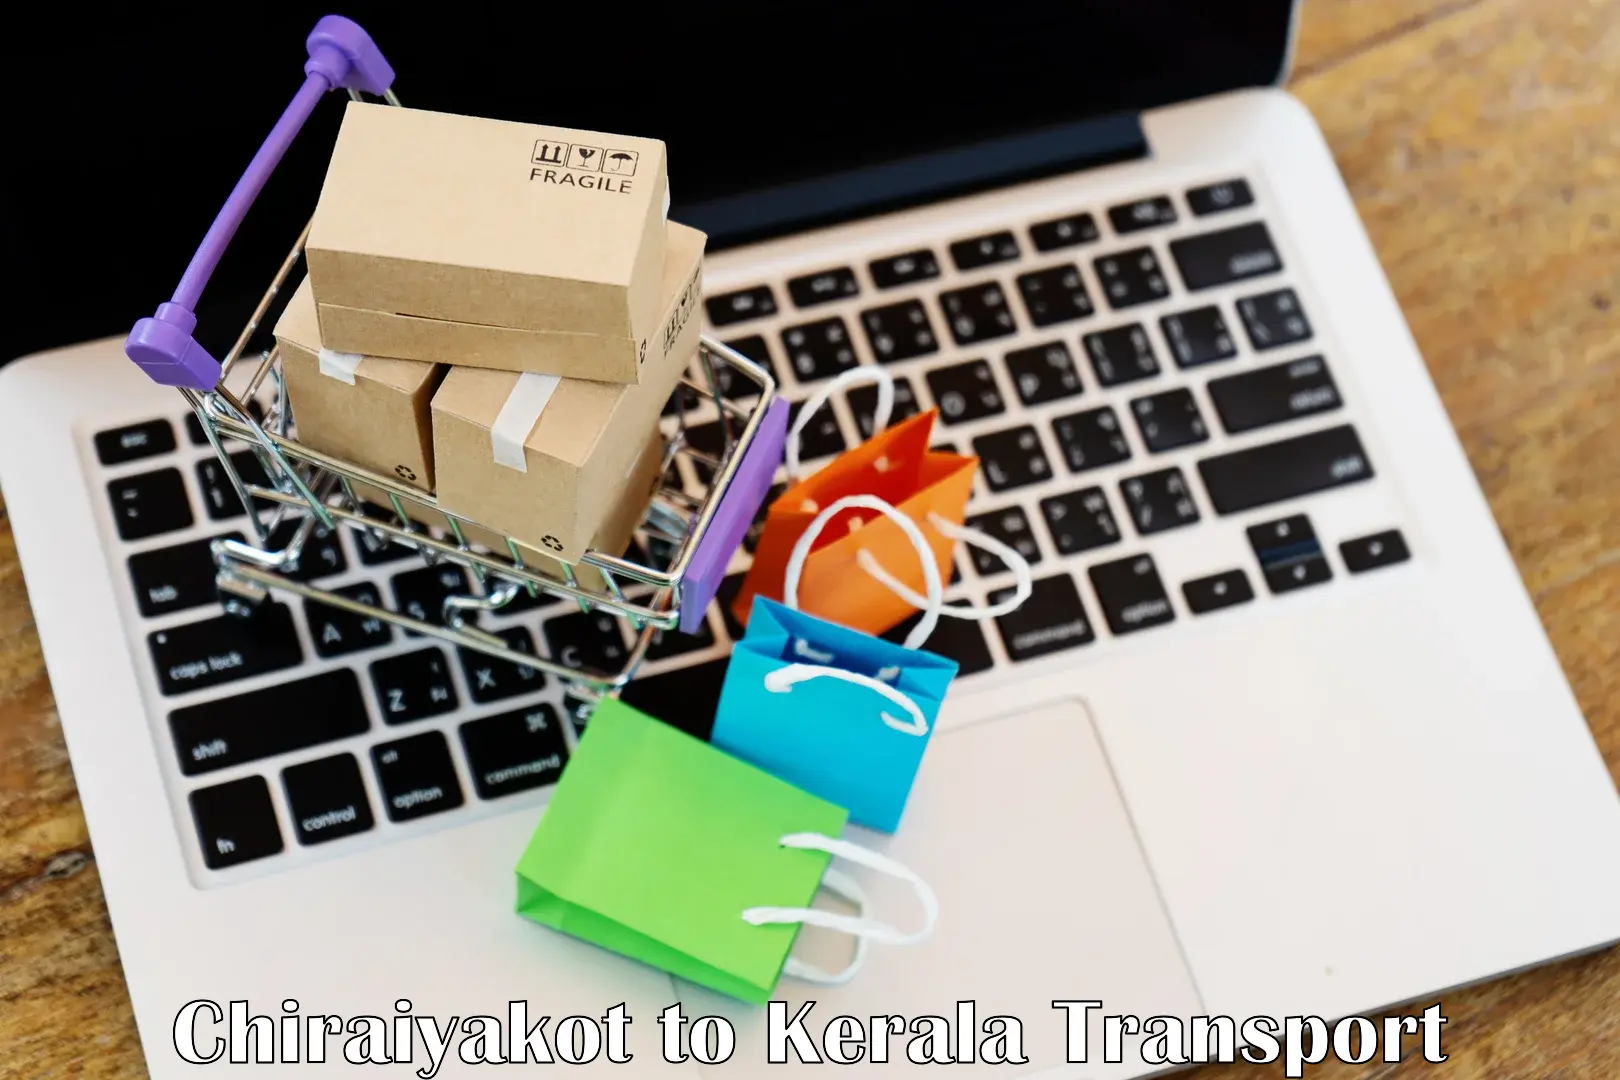 Shipping partner Chiraiyakot to Kerala